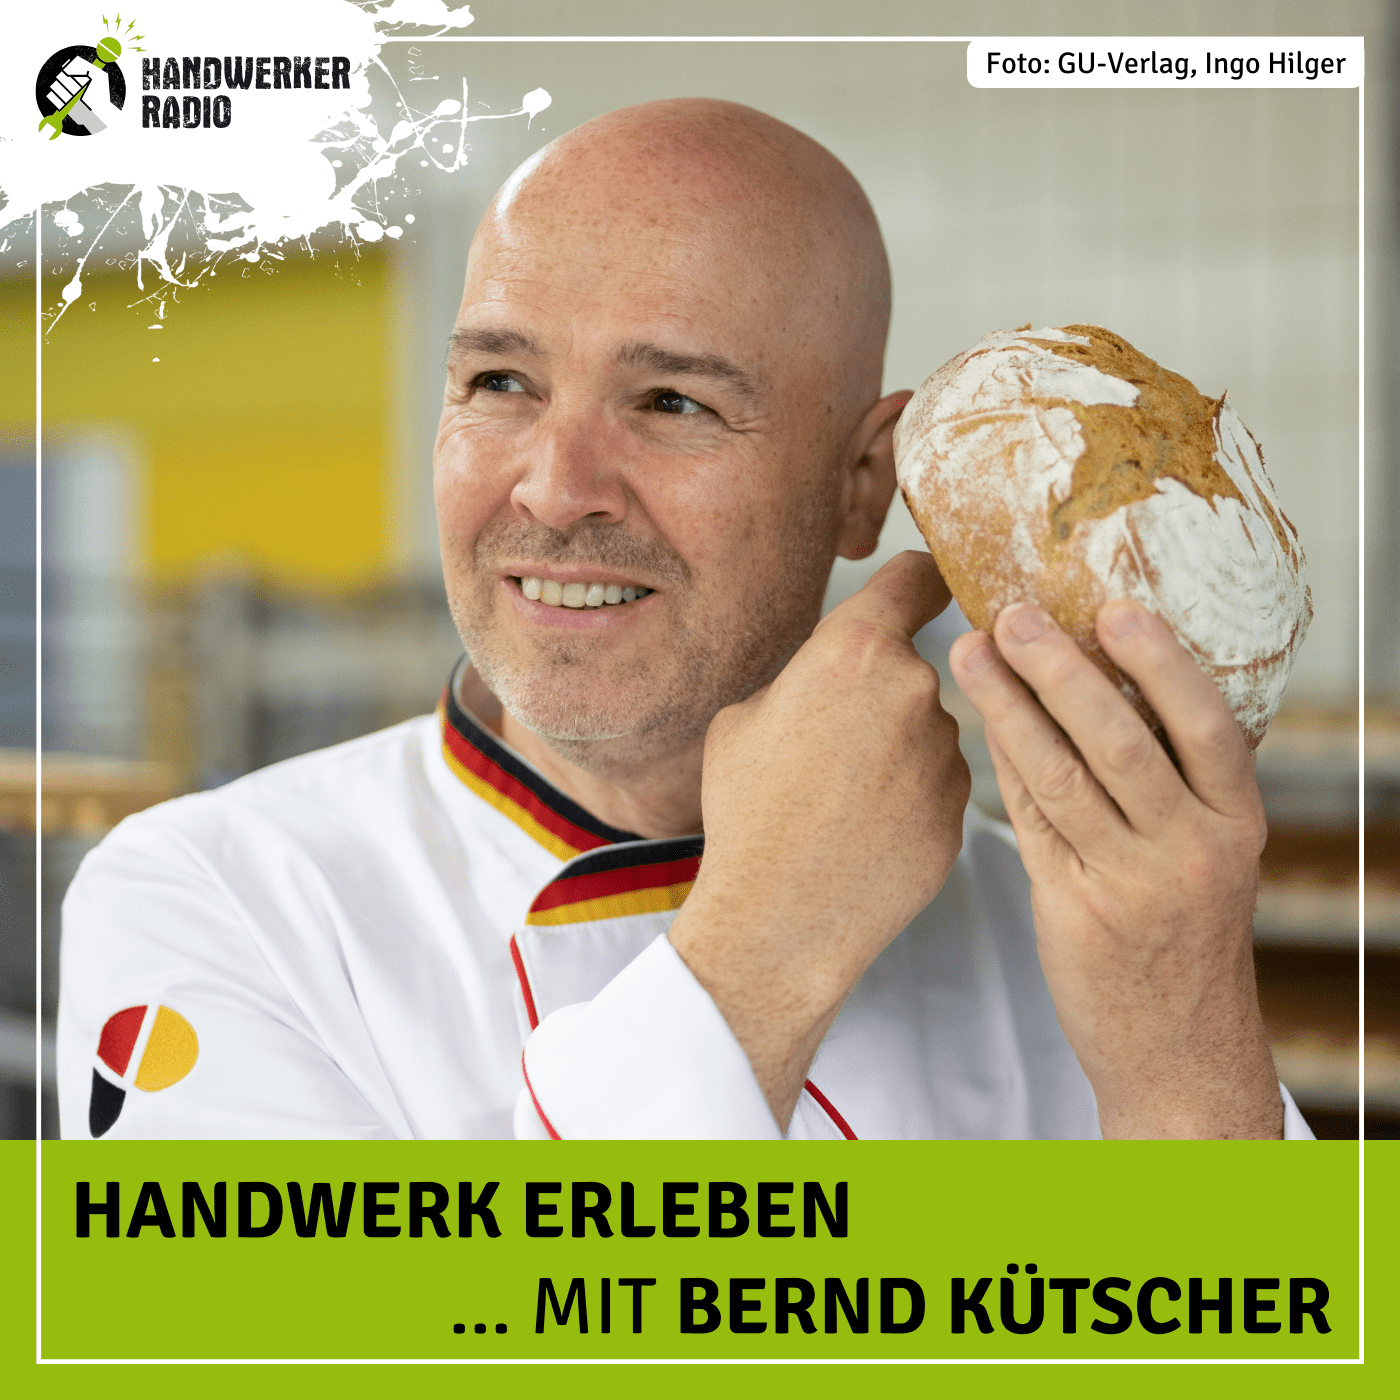 #84 Bernd Kütscher, wie muss ein richtig gutes Brot schmecken?